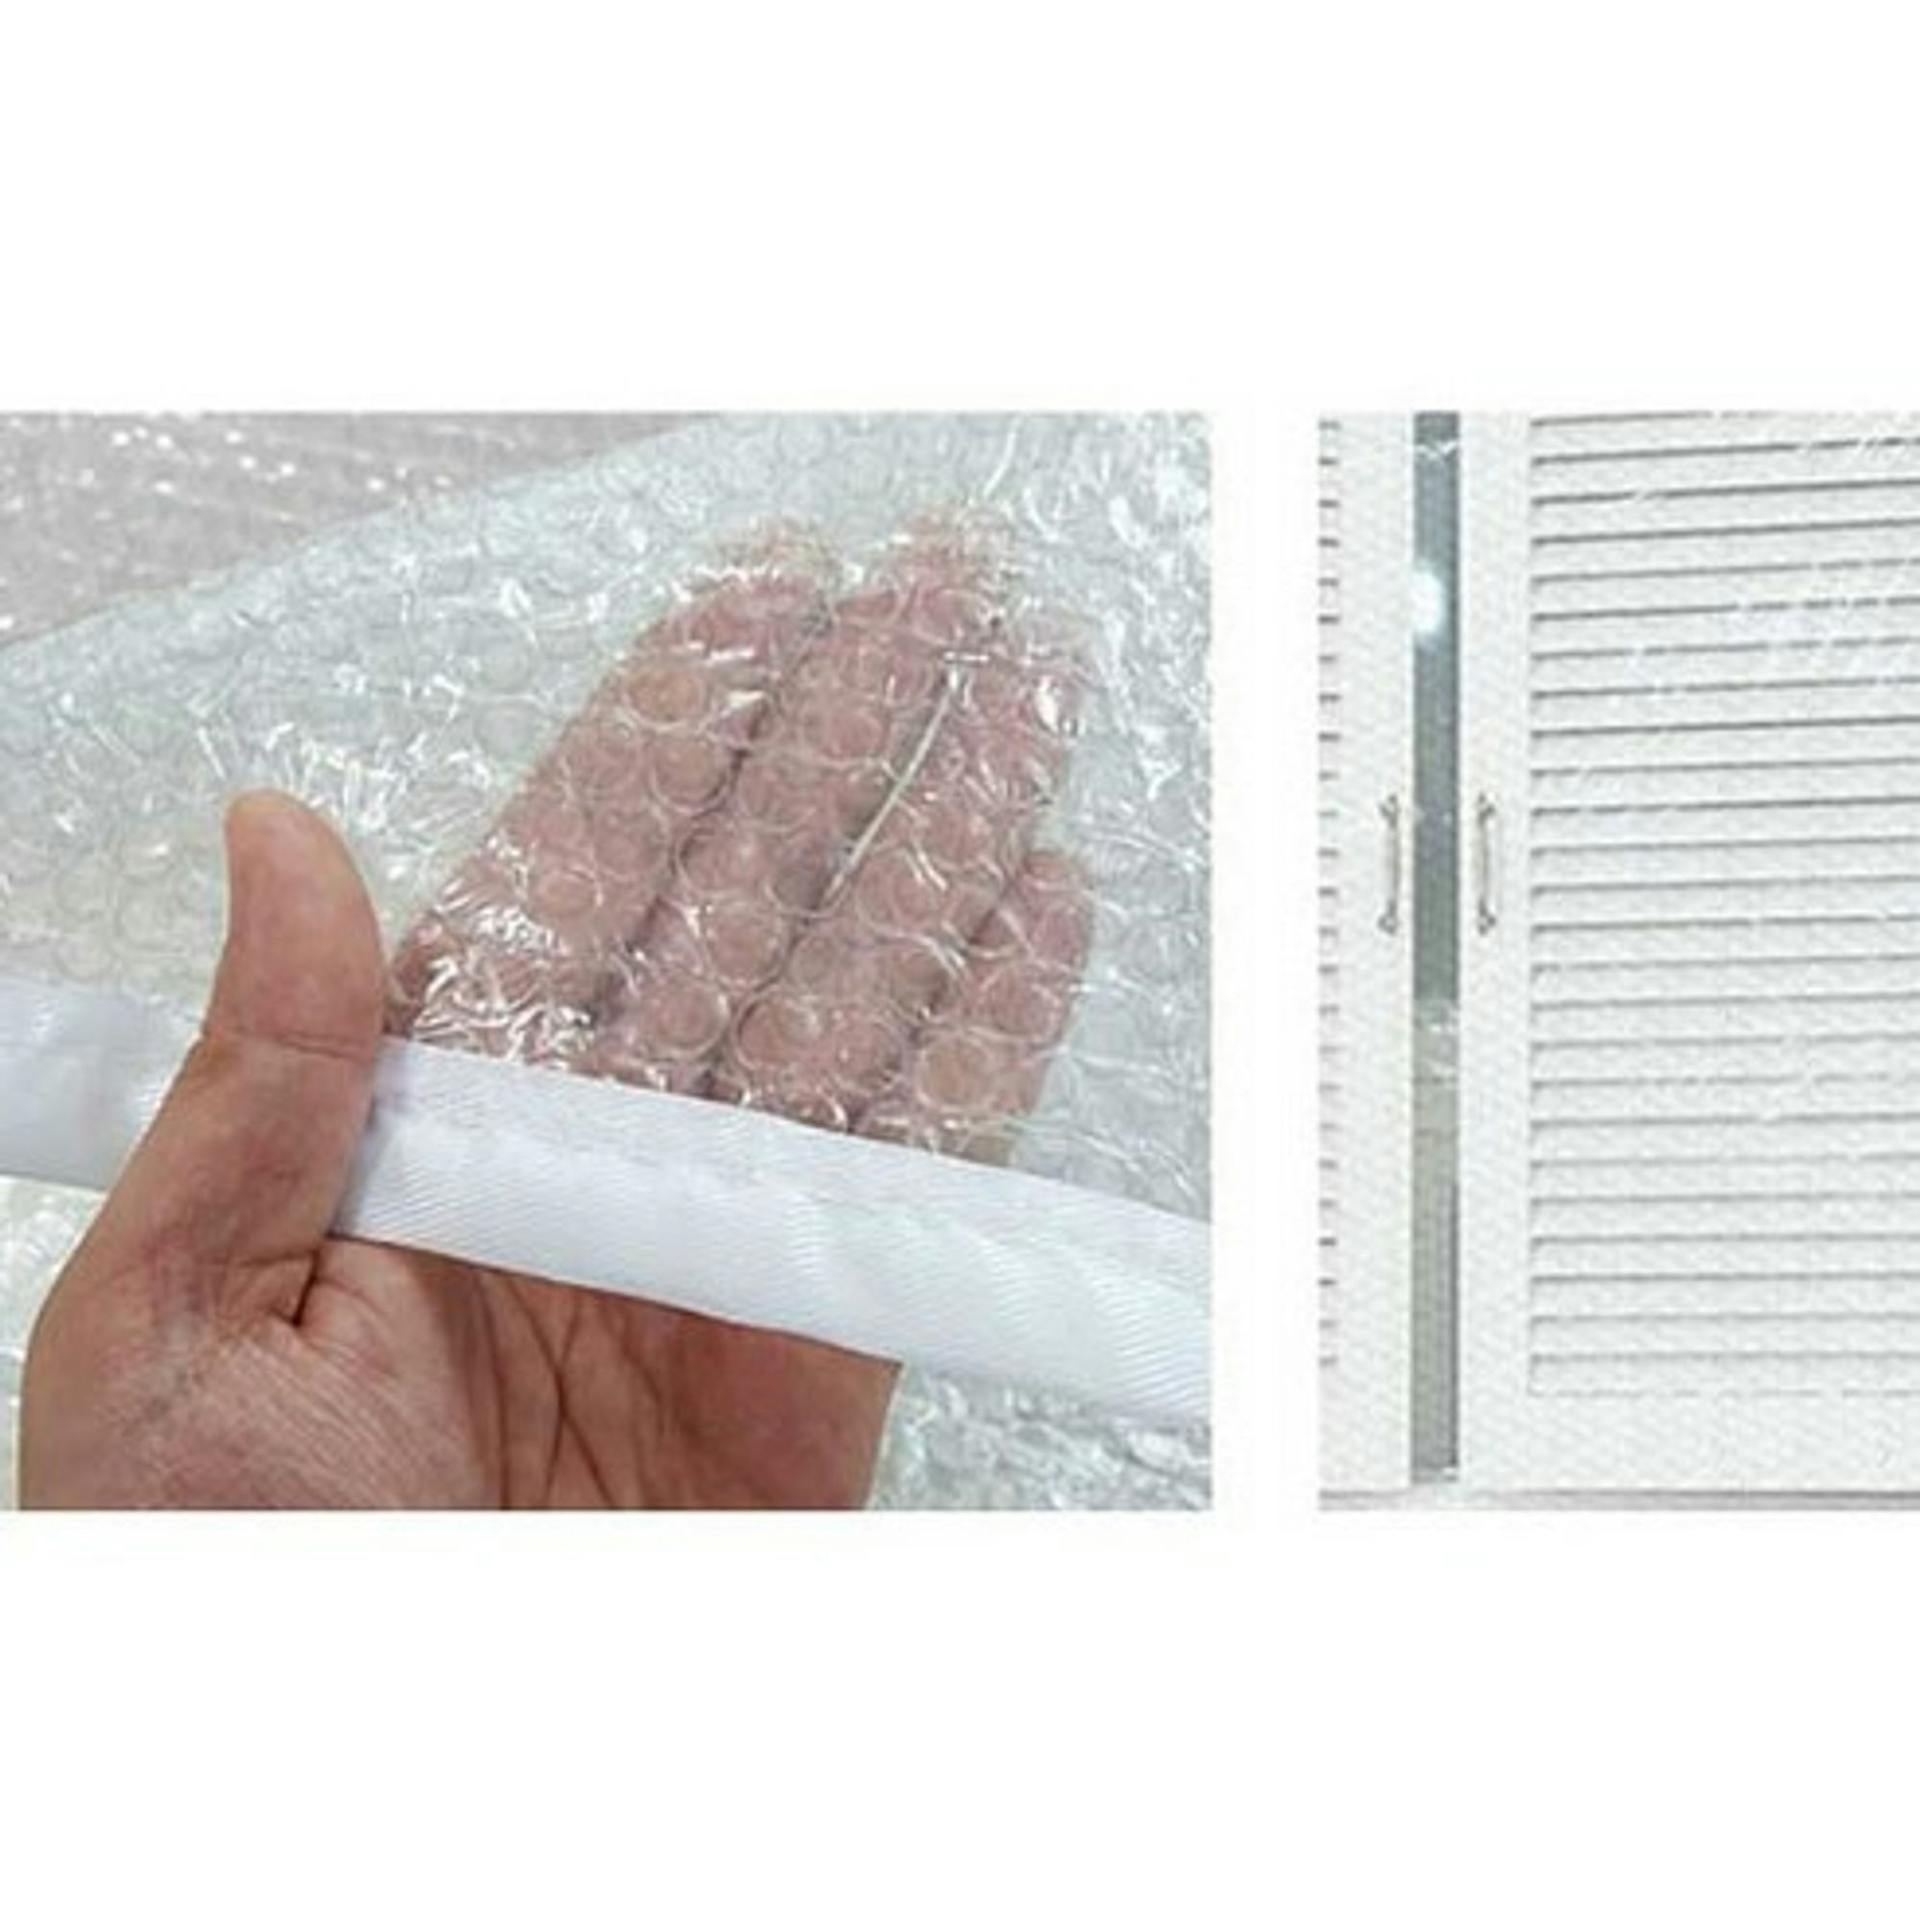 창문 방풍비닐 다샵 창문형 지퍼식 EVA 방풍 바람막이 에어캡 관련상품 및 가격비교